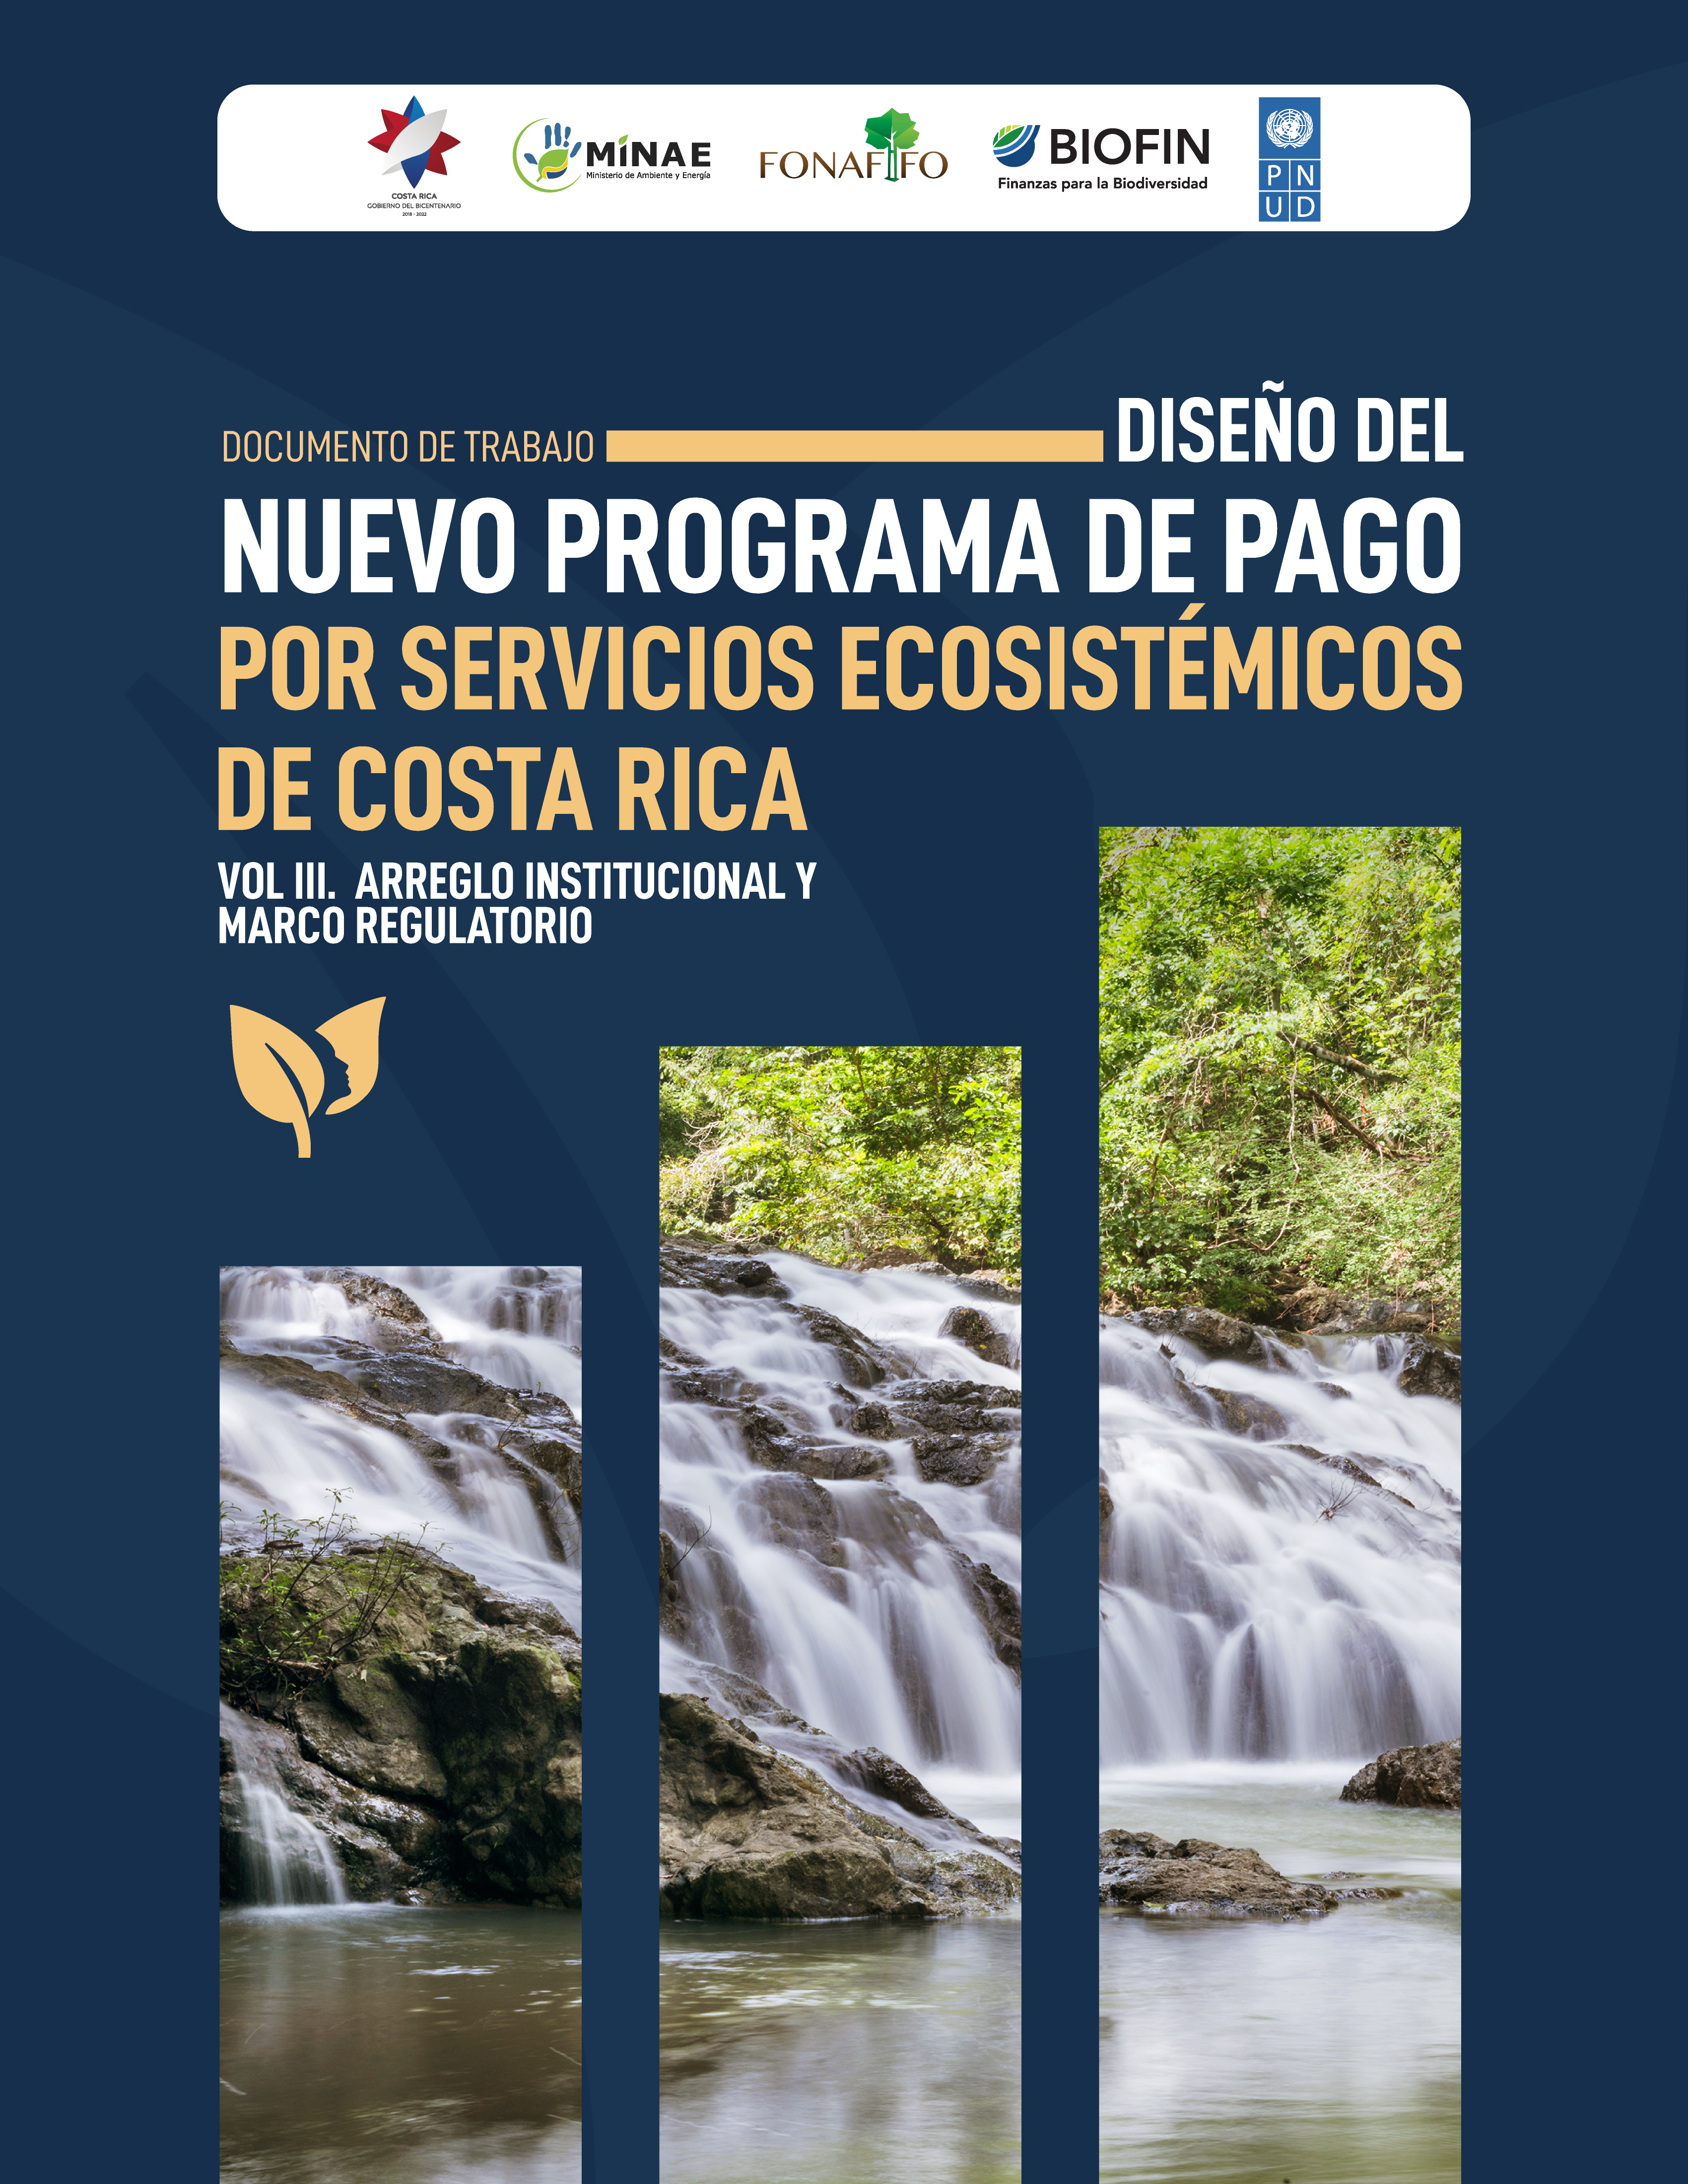 Documento de trabajo: Diseño del nuevo programa de pago por servicios ecosistémicos. VOL III: Arreglo institucional y marco regulatorio